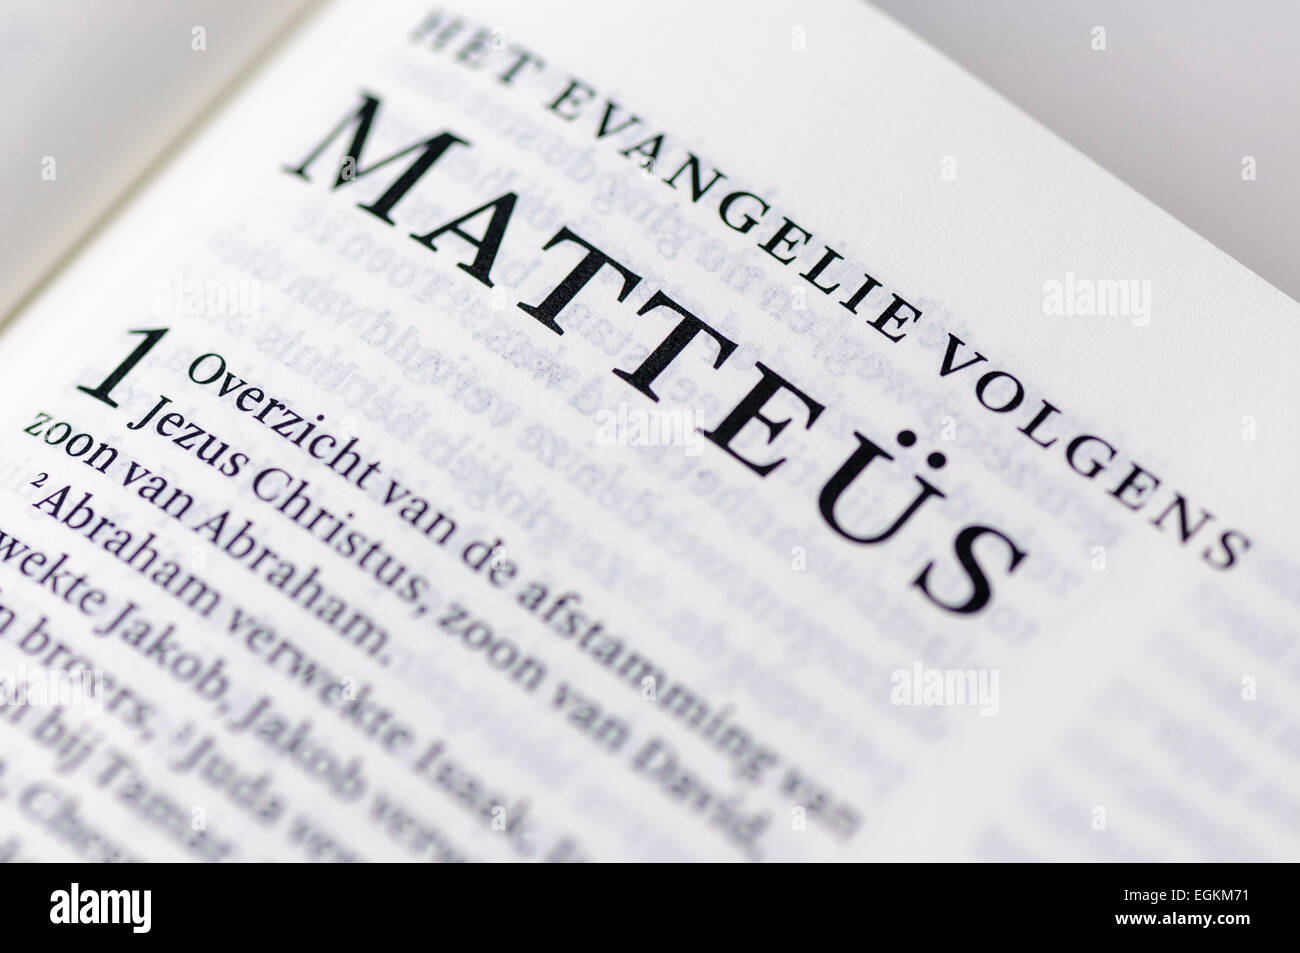 The book of St. Matthew (Matteus), written in Dutch Stock Photo